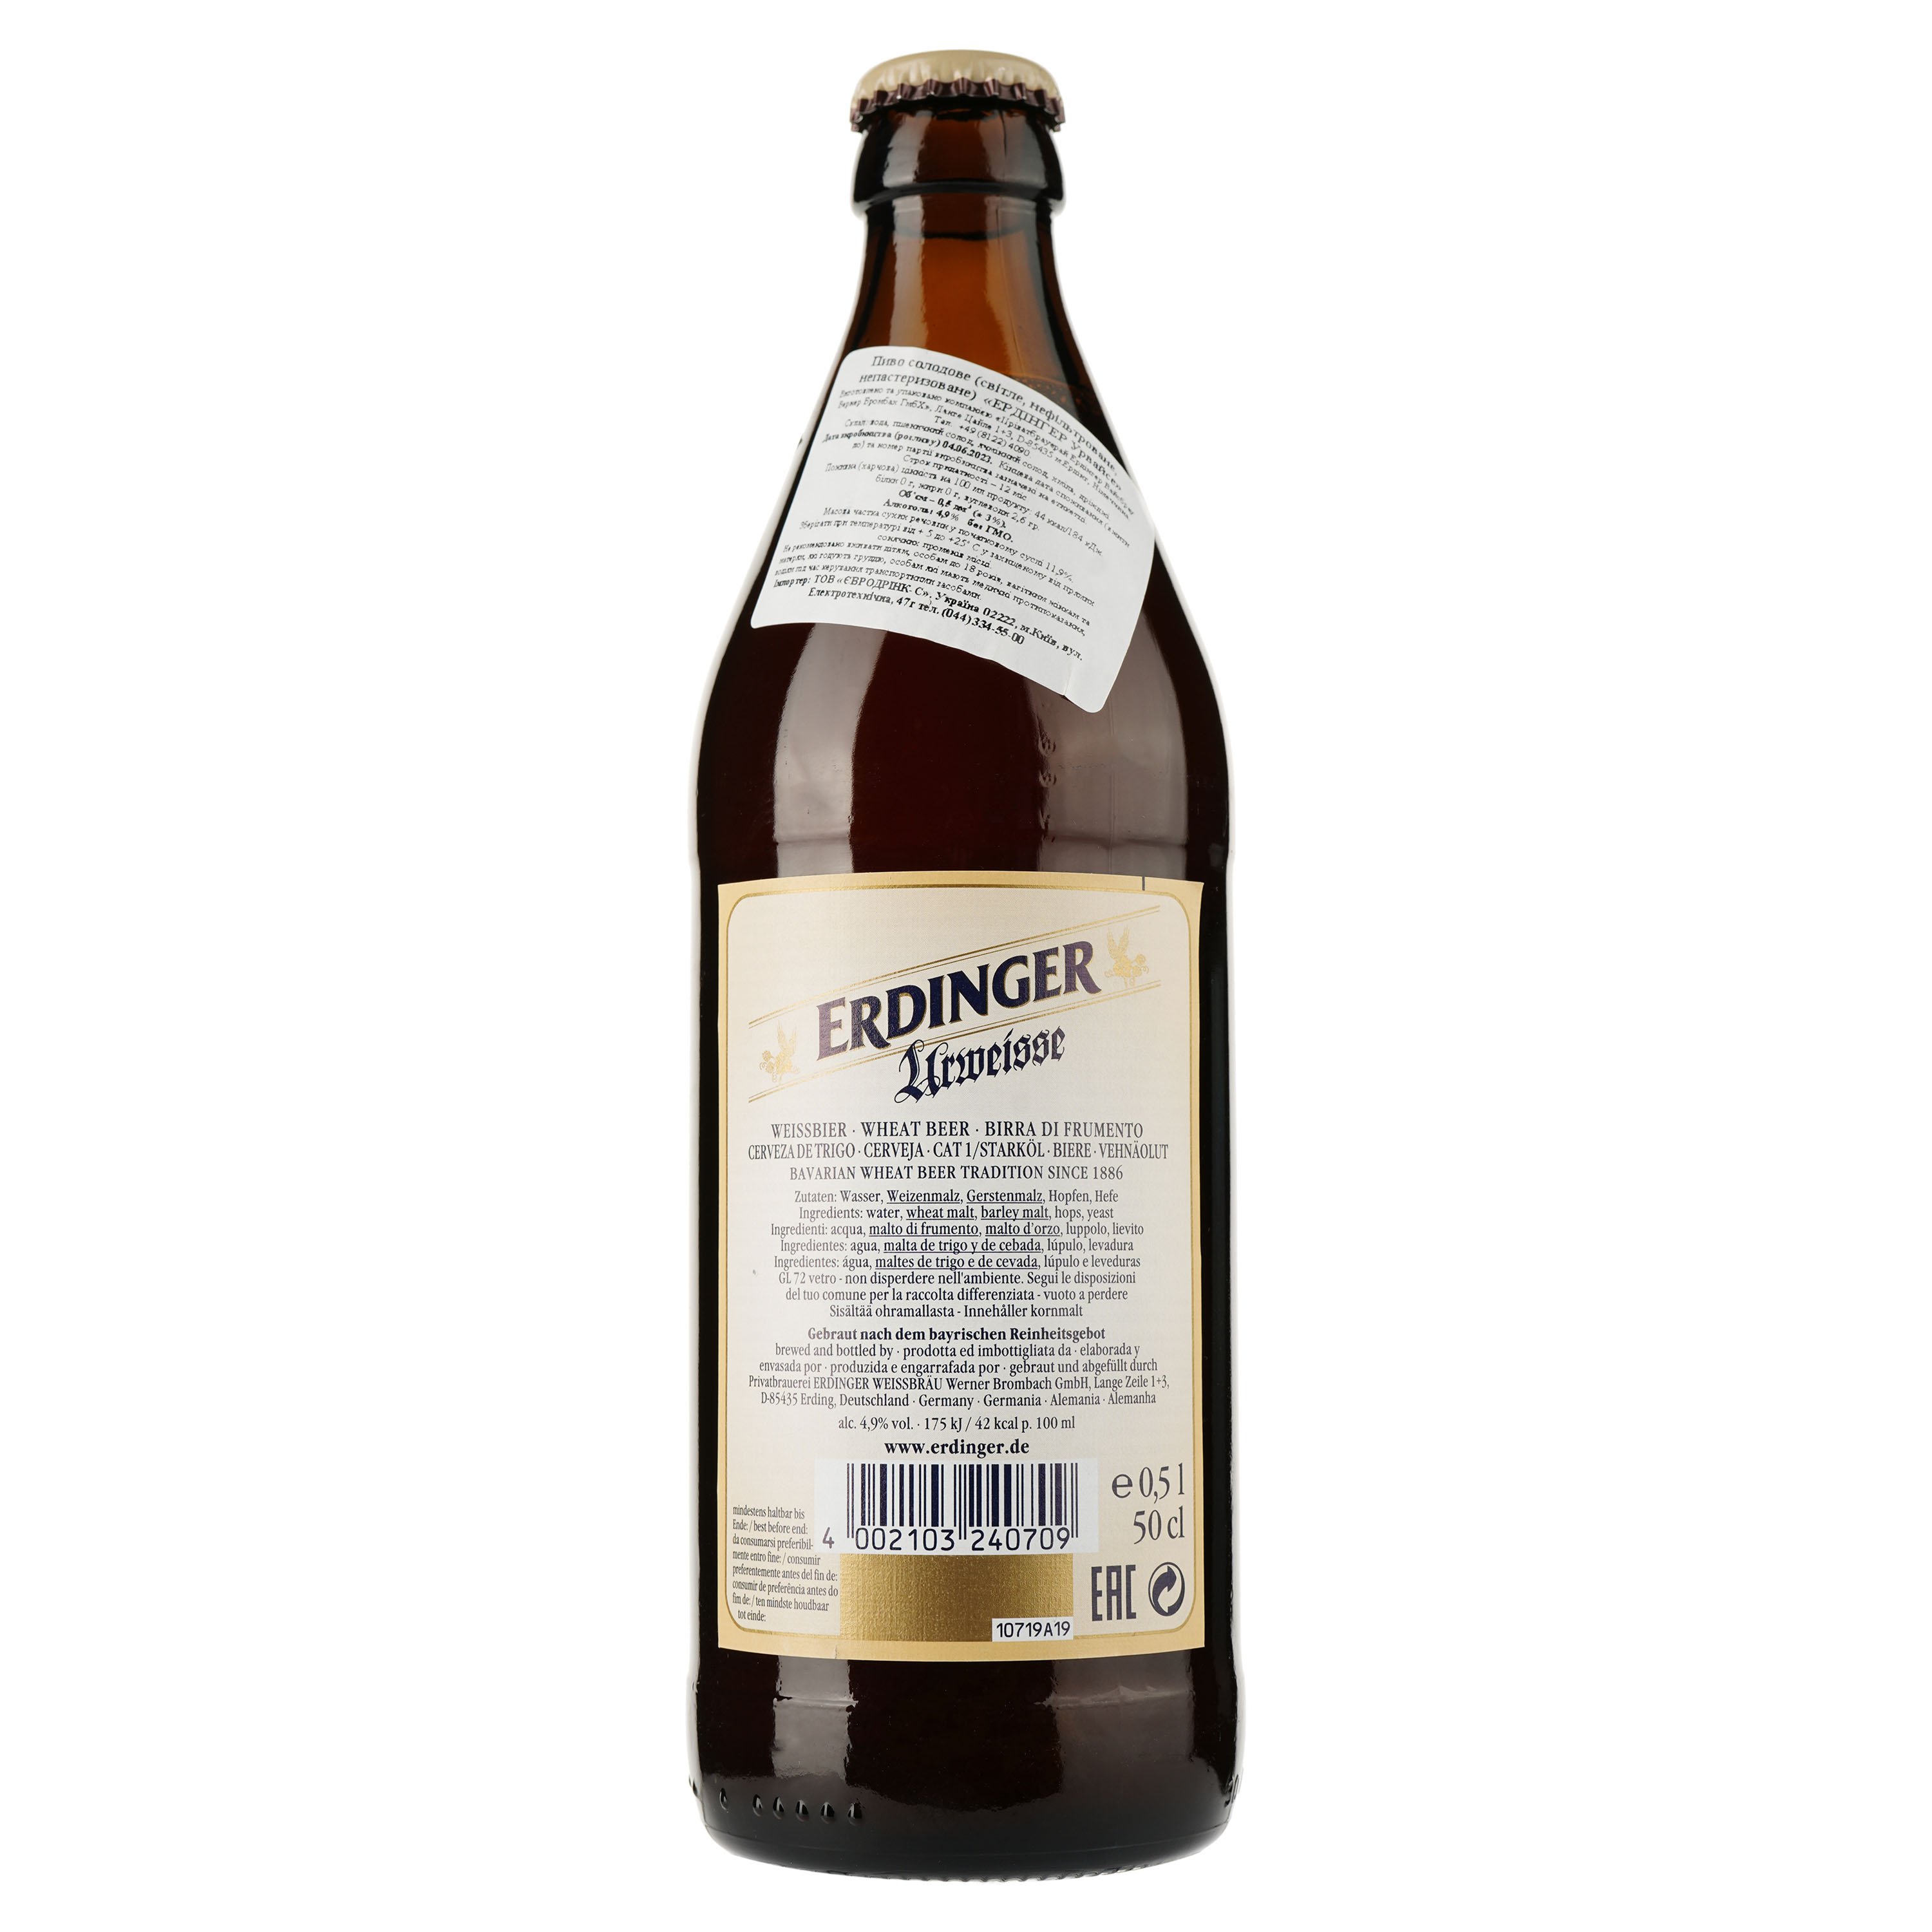 Пиво Erdinger Urweisse Пшеничное, светлое, 5,1%, 0,5 л (761336) - фото 2